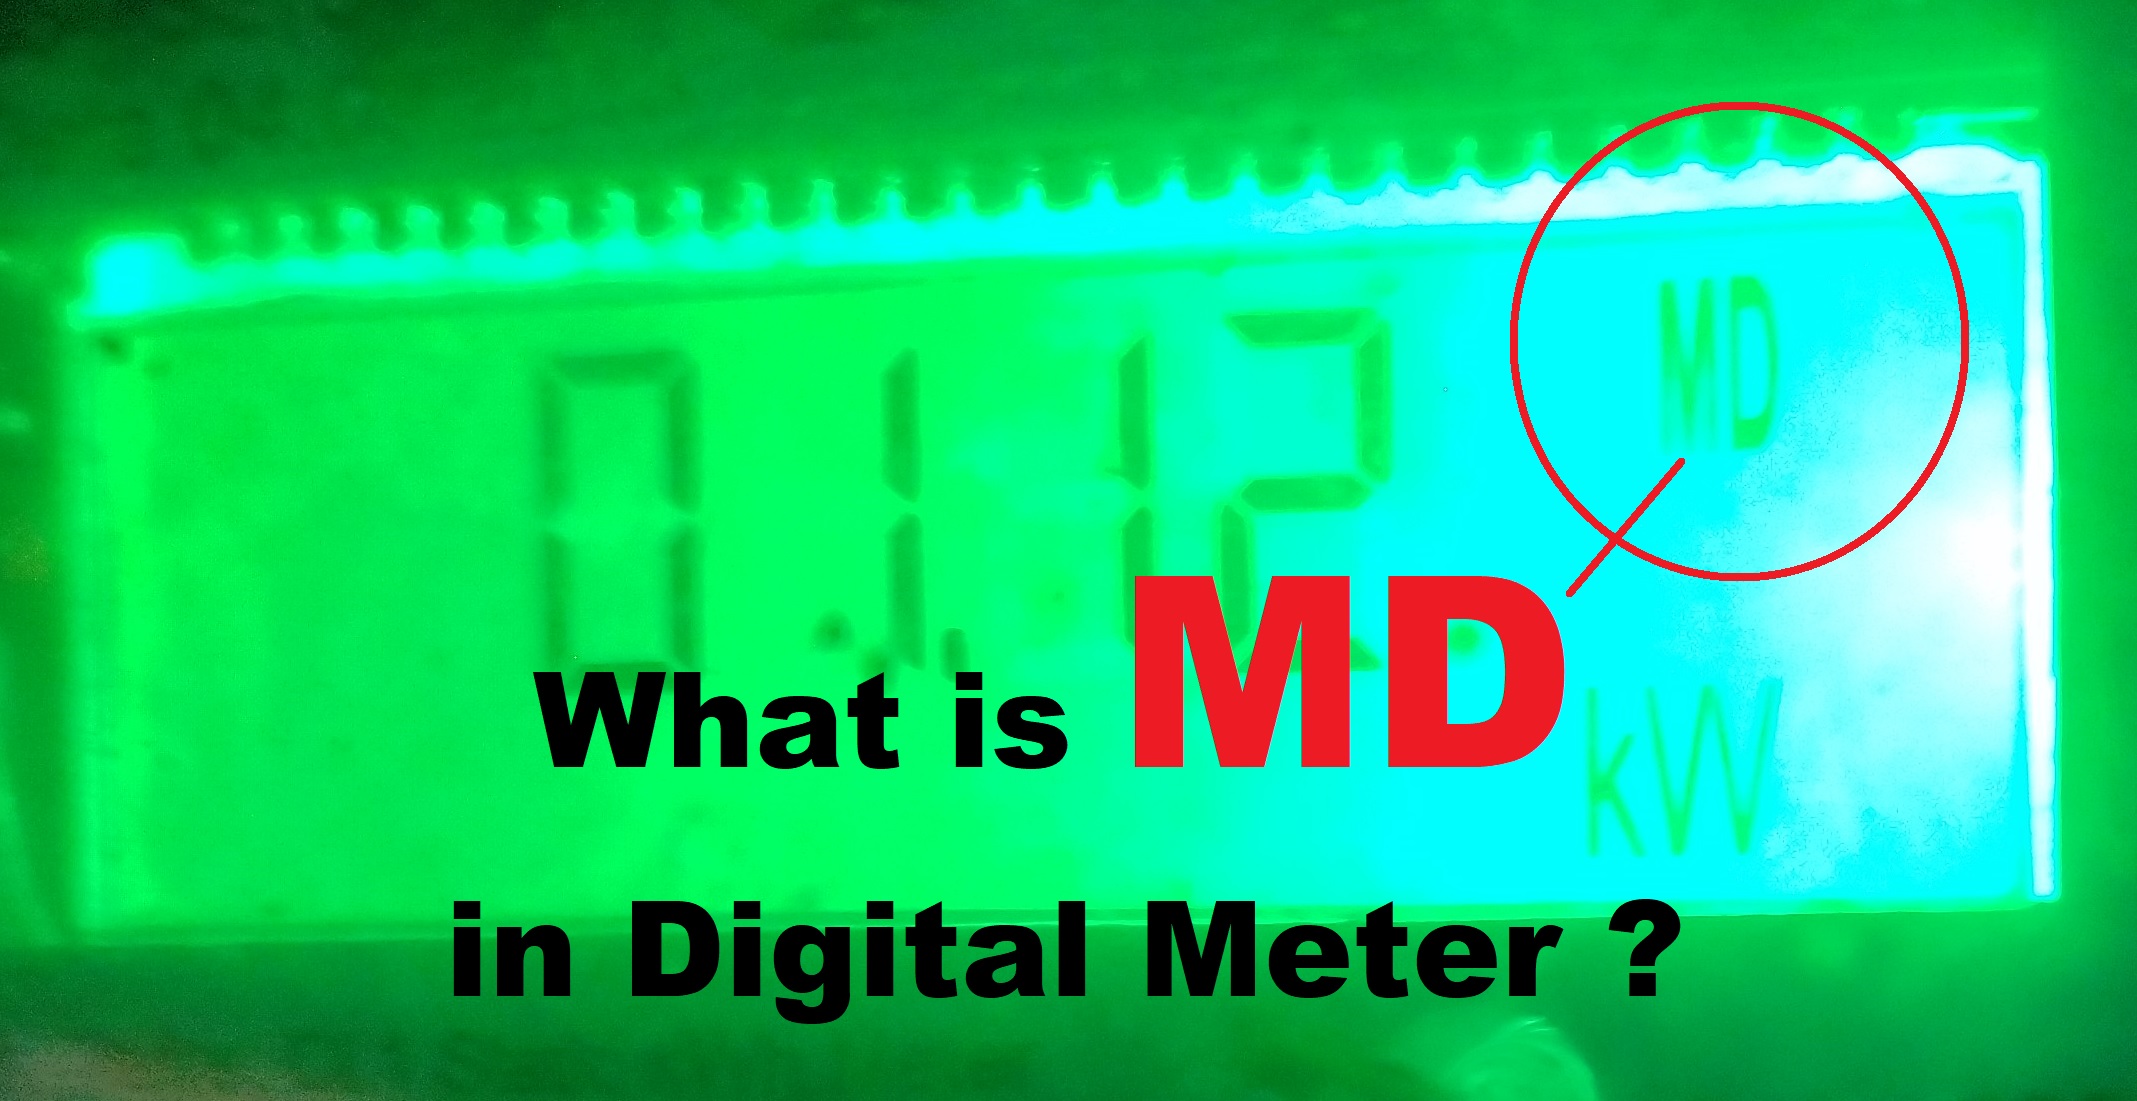 डिजिटल मीटर में MD क्या होता है?